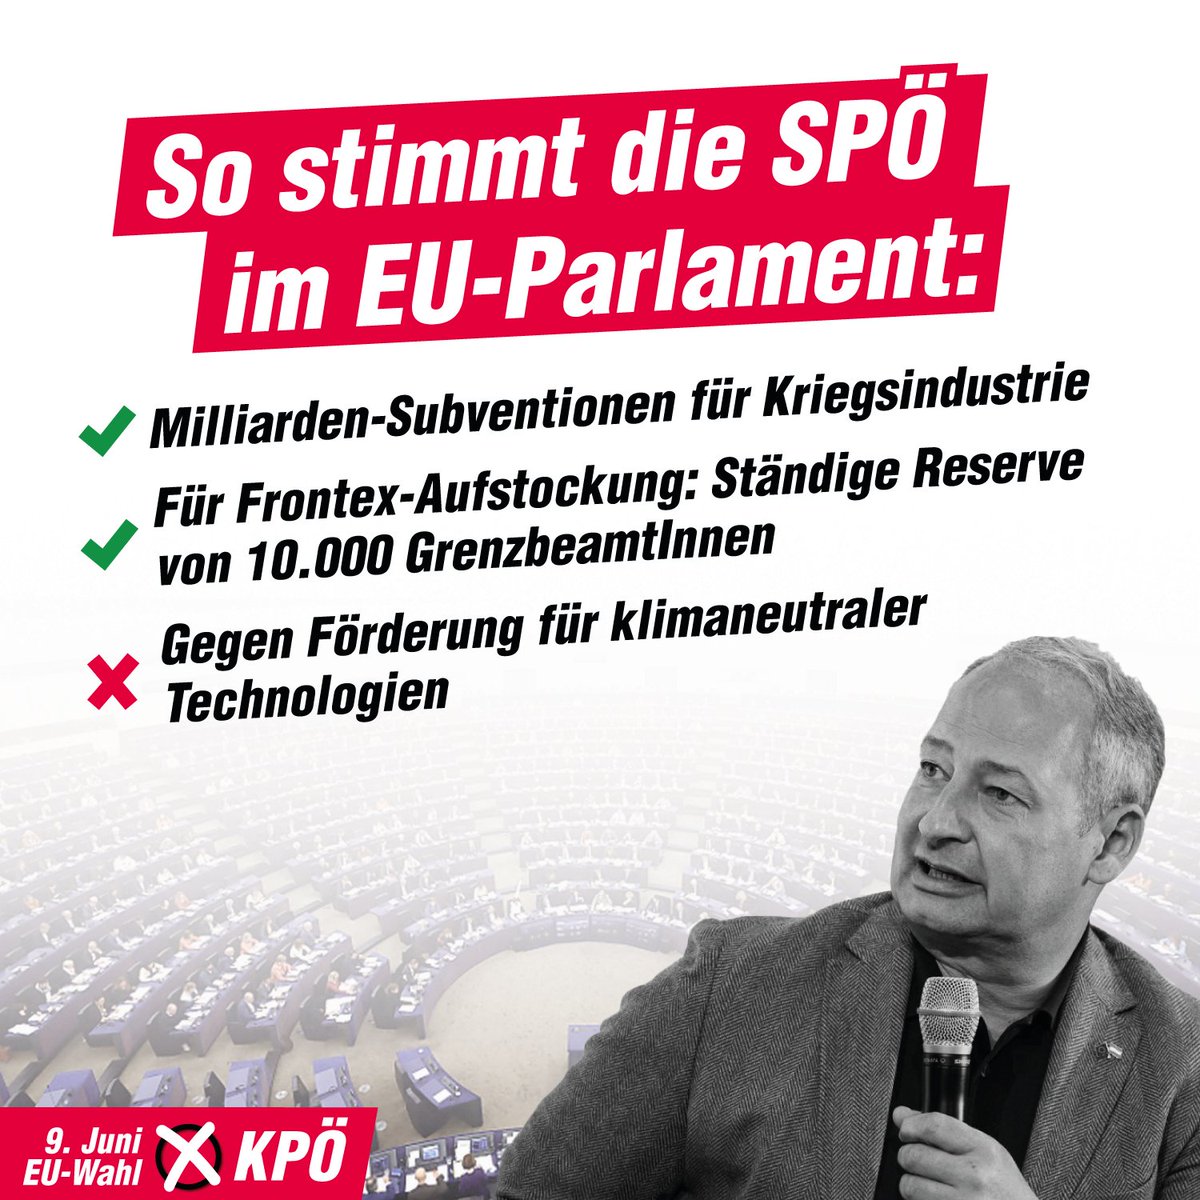 Die SPÖ schreibt sich die Neutralität auf die Fahne. Das Abstimmungsverhalten der österreichischen Abgeordneten im EU-Parlament lässt den Schluss zu, dass die Neutralität für Schieder & Co. mehr ein Marketing-Gag ist 👈

Jede Stimme zählt:
Am 9. Juni ✘ #KPÖ